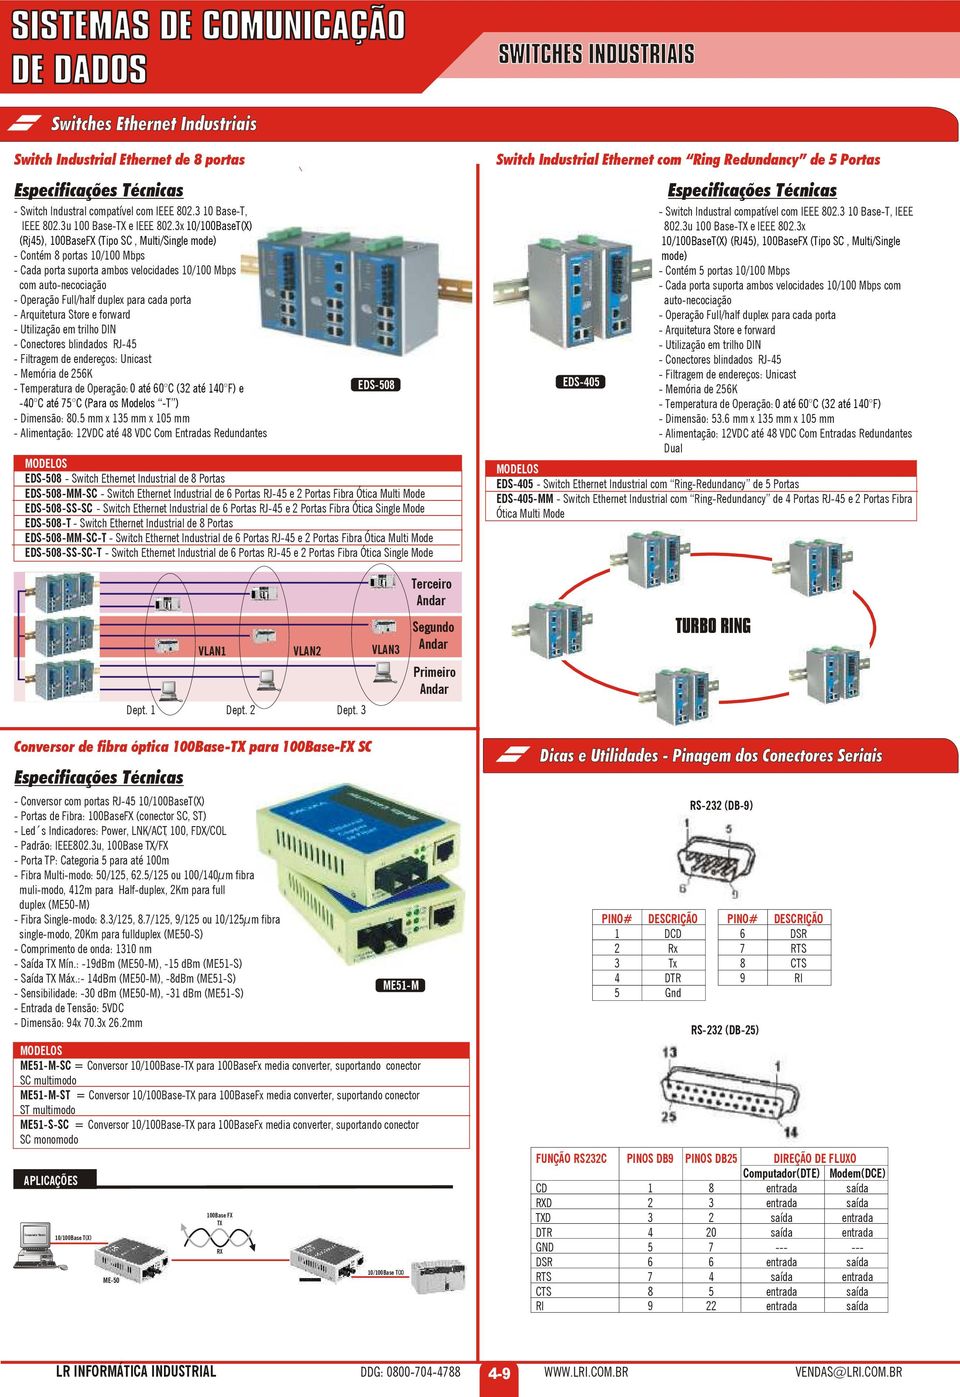 3x 10/100BaseT(X) (Rj45), 100BaseFX (Tipo SC, Multi/Single mode) - Contém 8 portas 10/100 Mbps - Cada porta suporta ambos velocidades 10/100 Mbps com auto-necociação - Operação Full/half duplex para